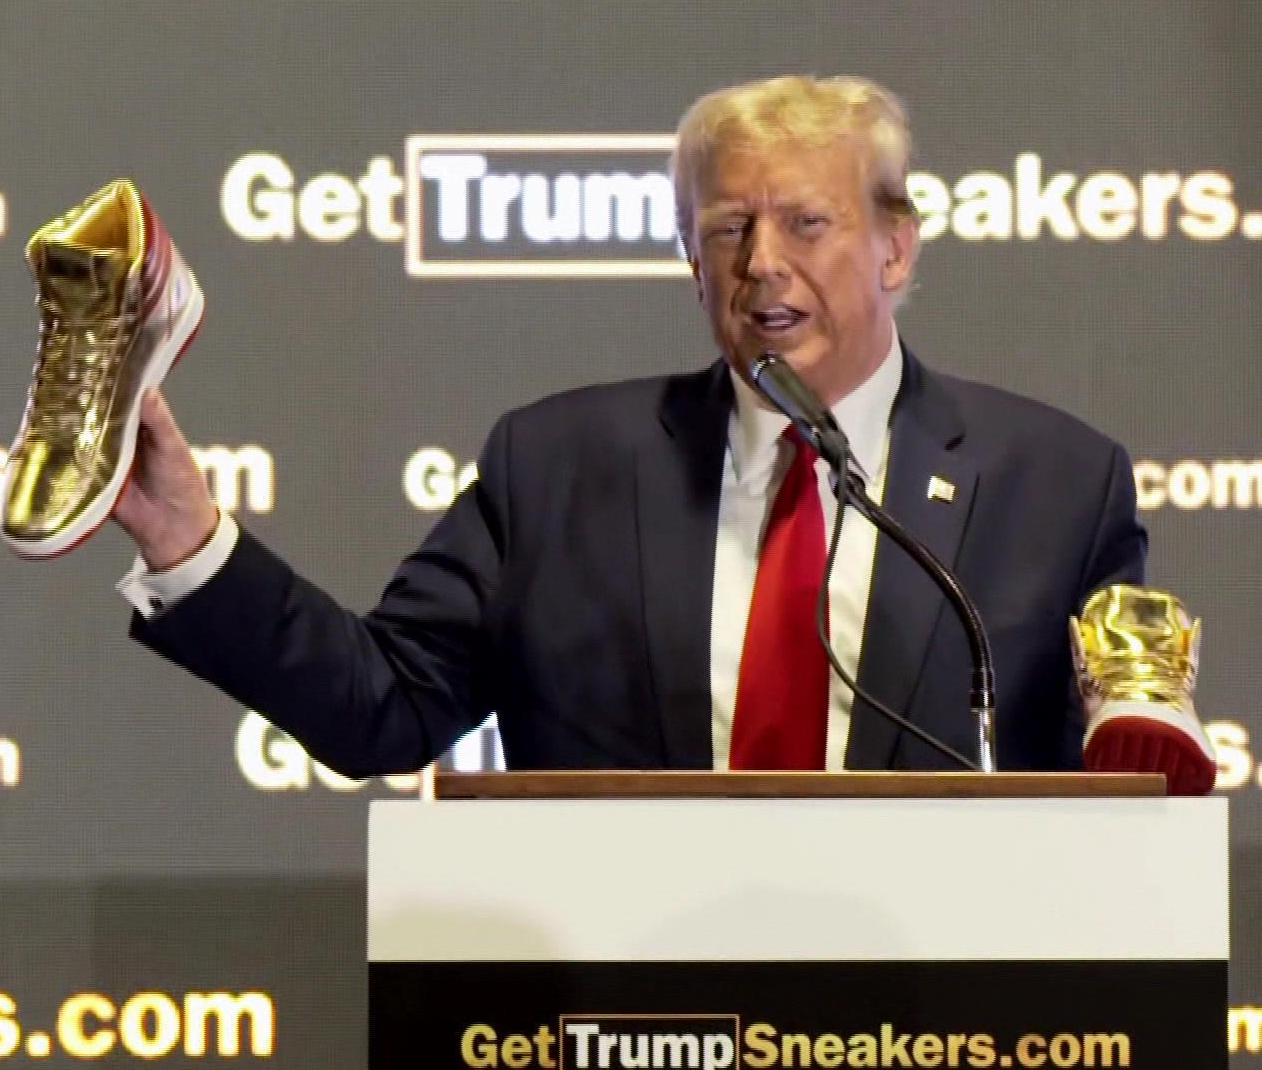 Donald Trump și-a lansat propria linie de ”teneși” /FOTO! Cât costă o pereche de ”T” aurii, cu detalii de pe steagul american